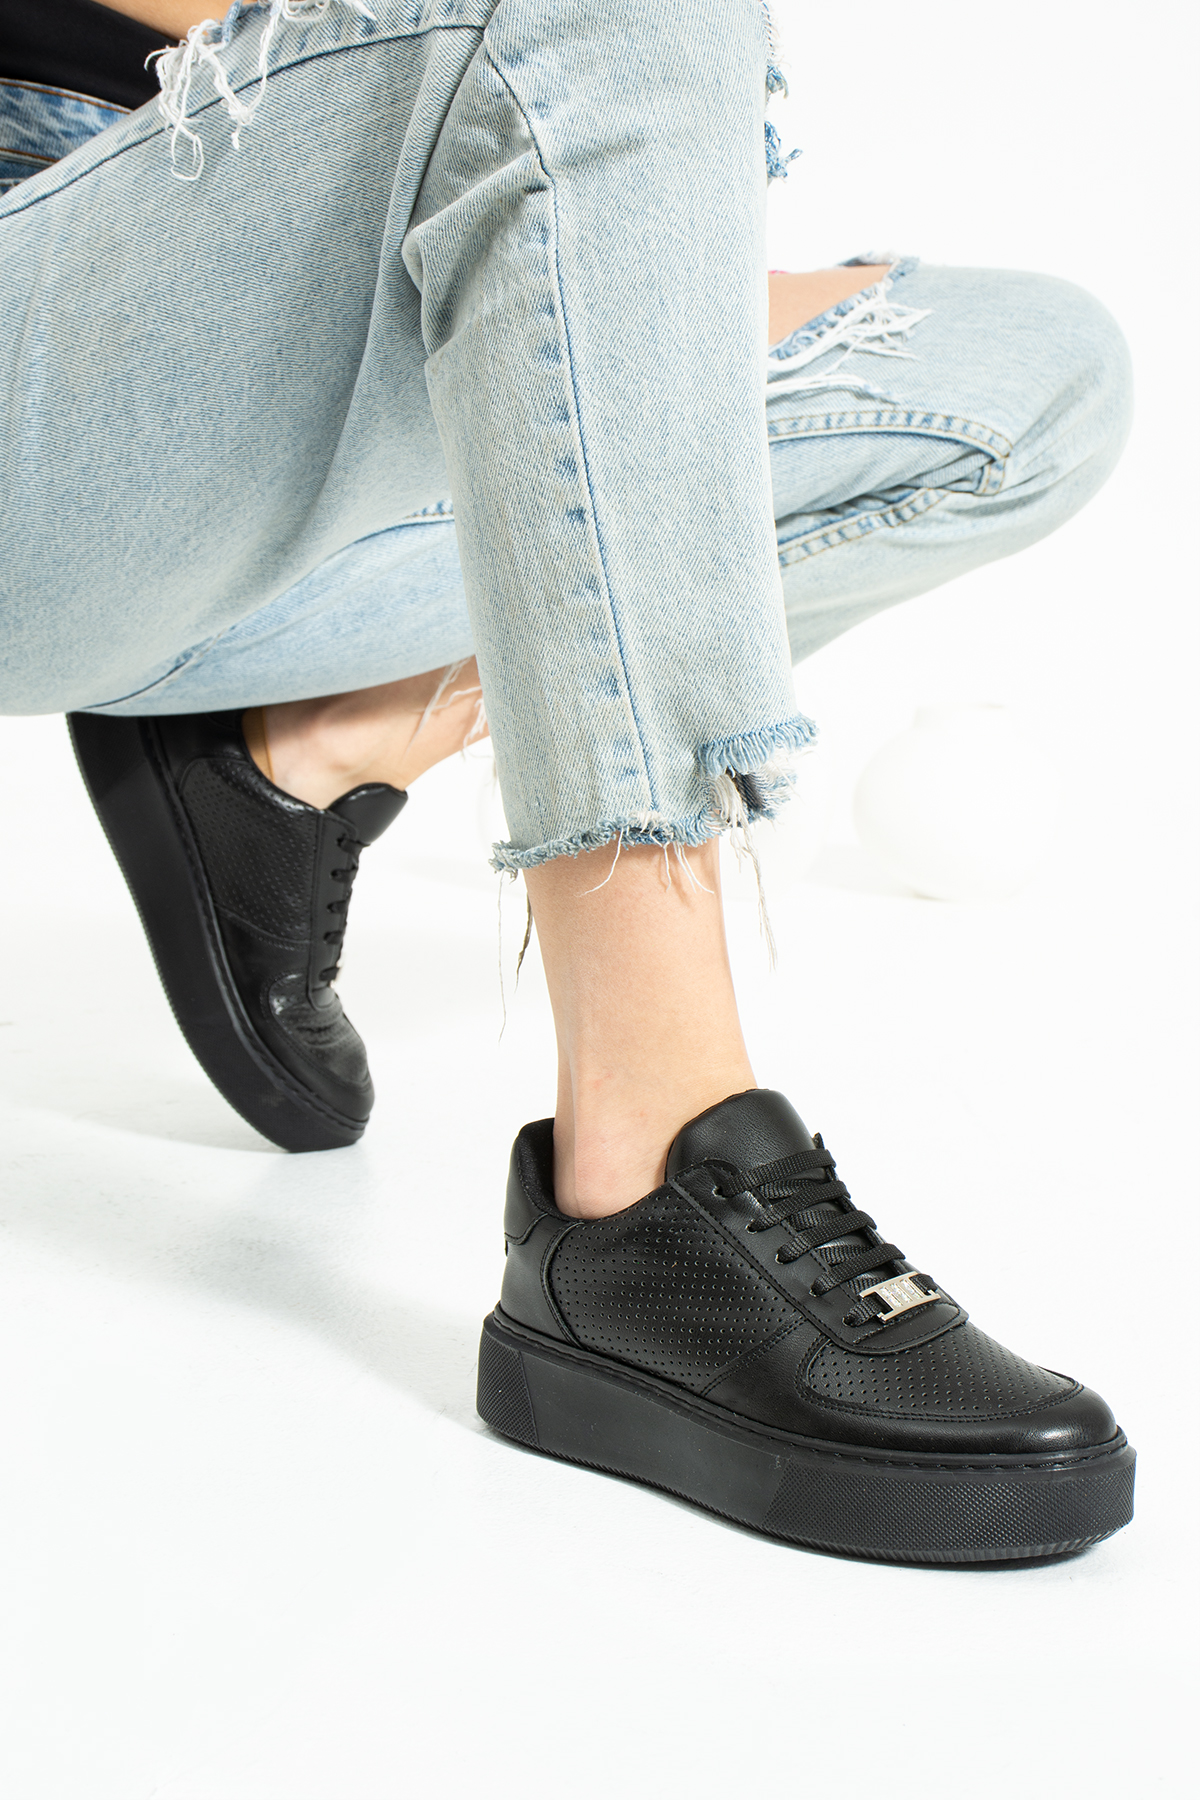 Siyah Zımbalı  Dikişli Taban Taş Detay Bağcıklı Günlük Ortapedik İç Taban Kadın Sneaker